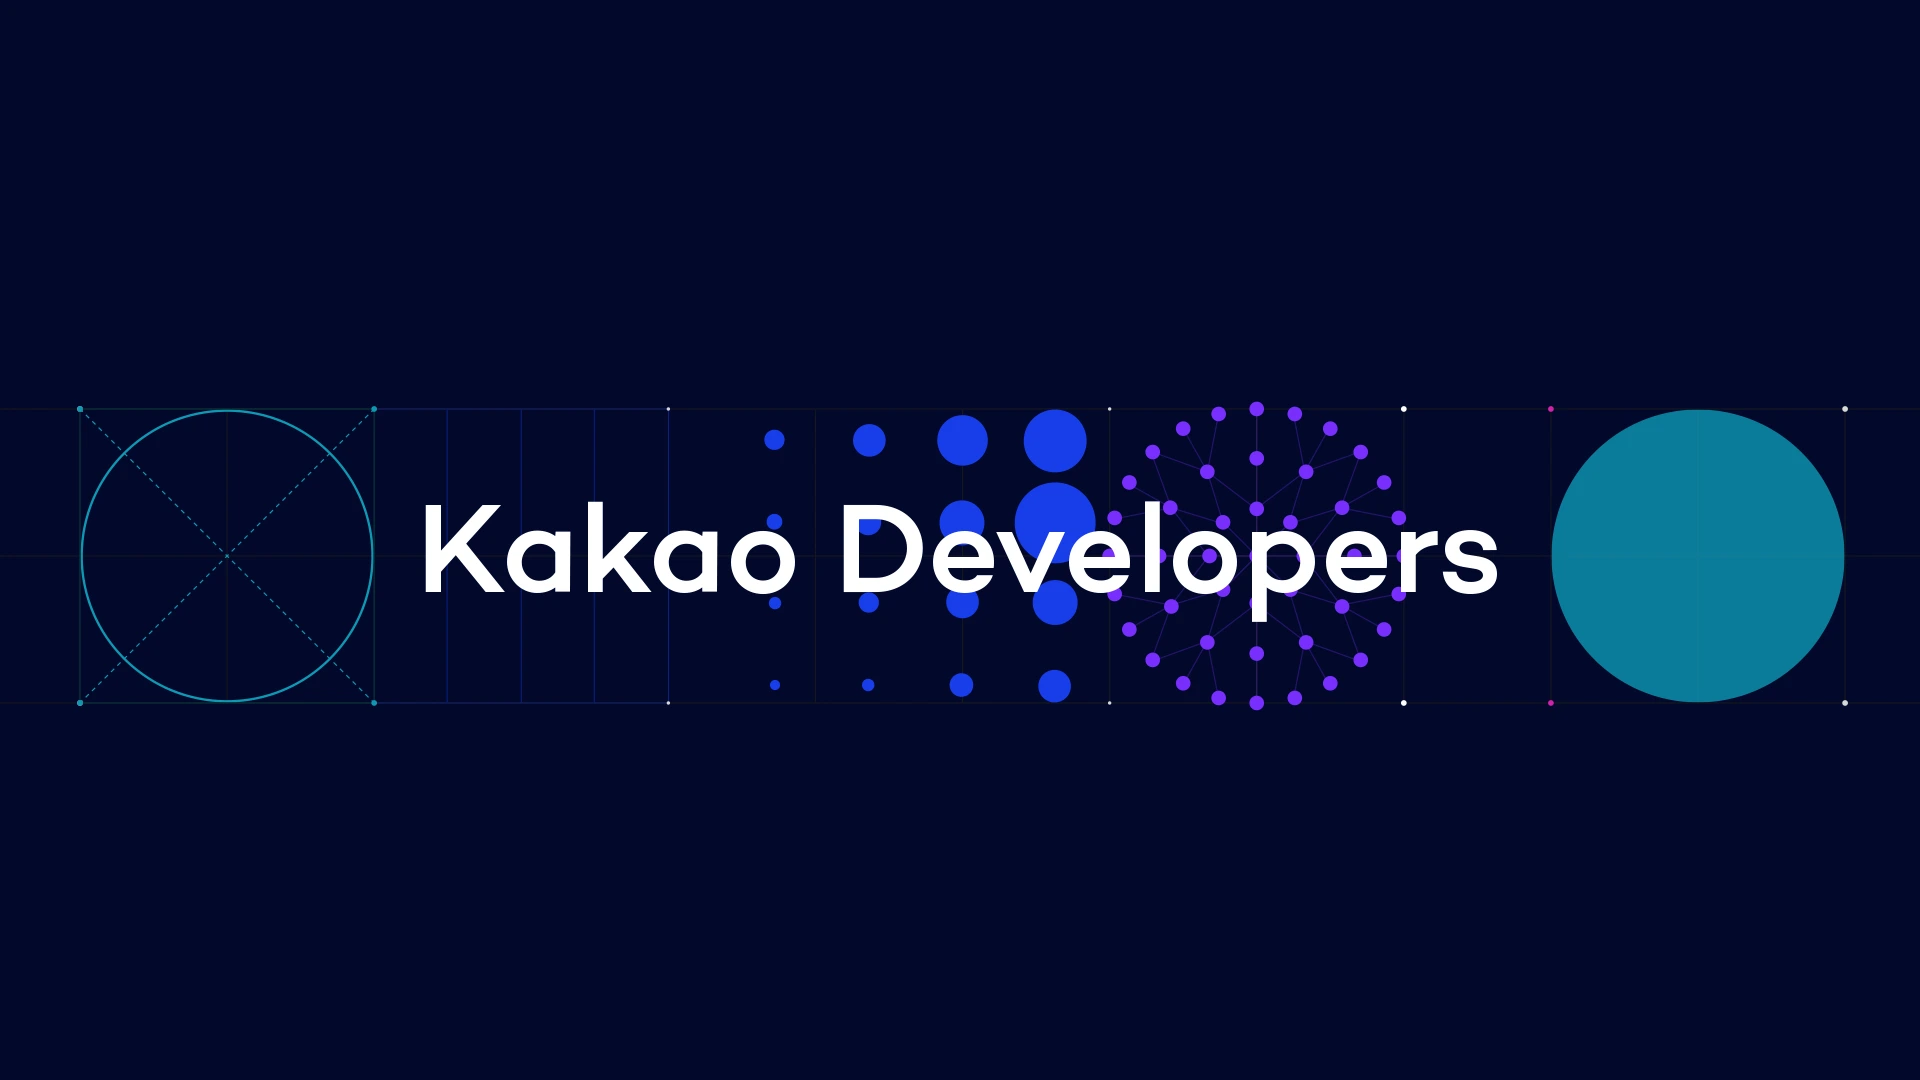 개발자들과 카카오 서비스를 두 개의 원으로 그렸고, 그것을 연결하는 카카오 API플랫폼을 카카오 디벨로퍼스라는 로고로 표현했다